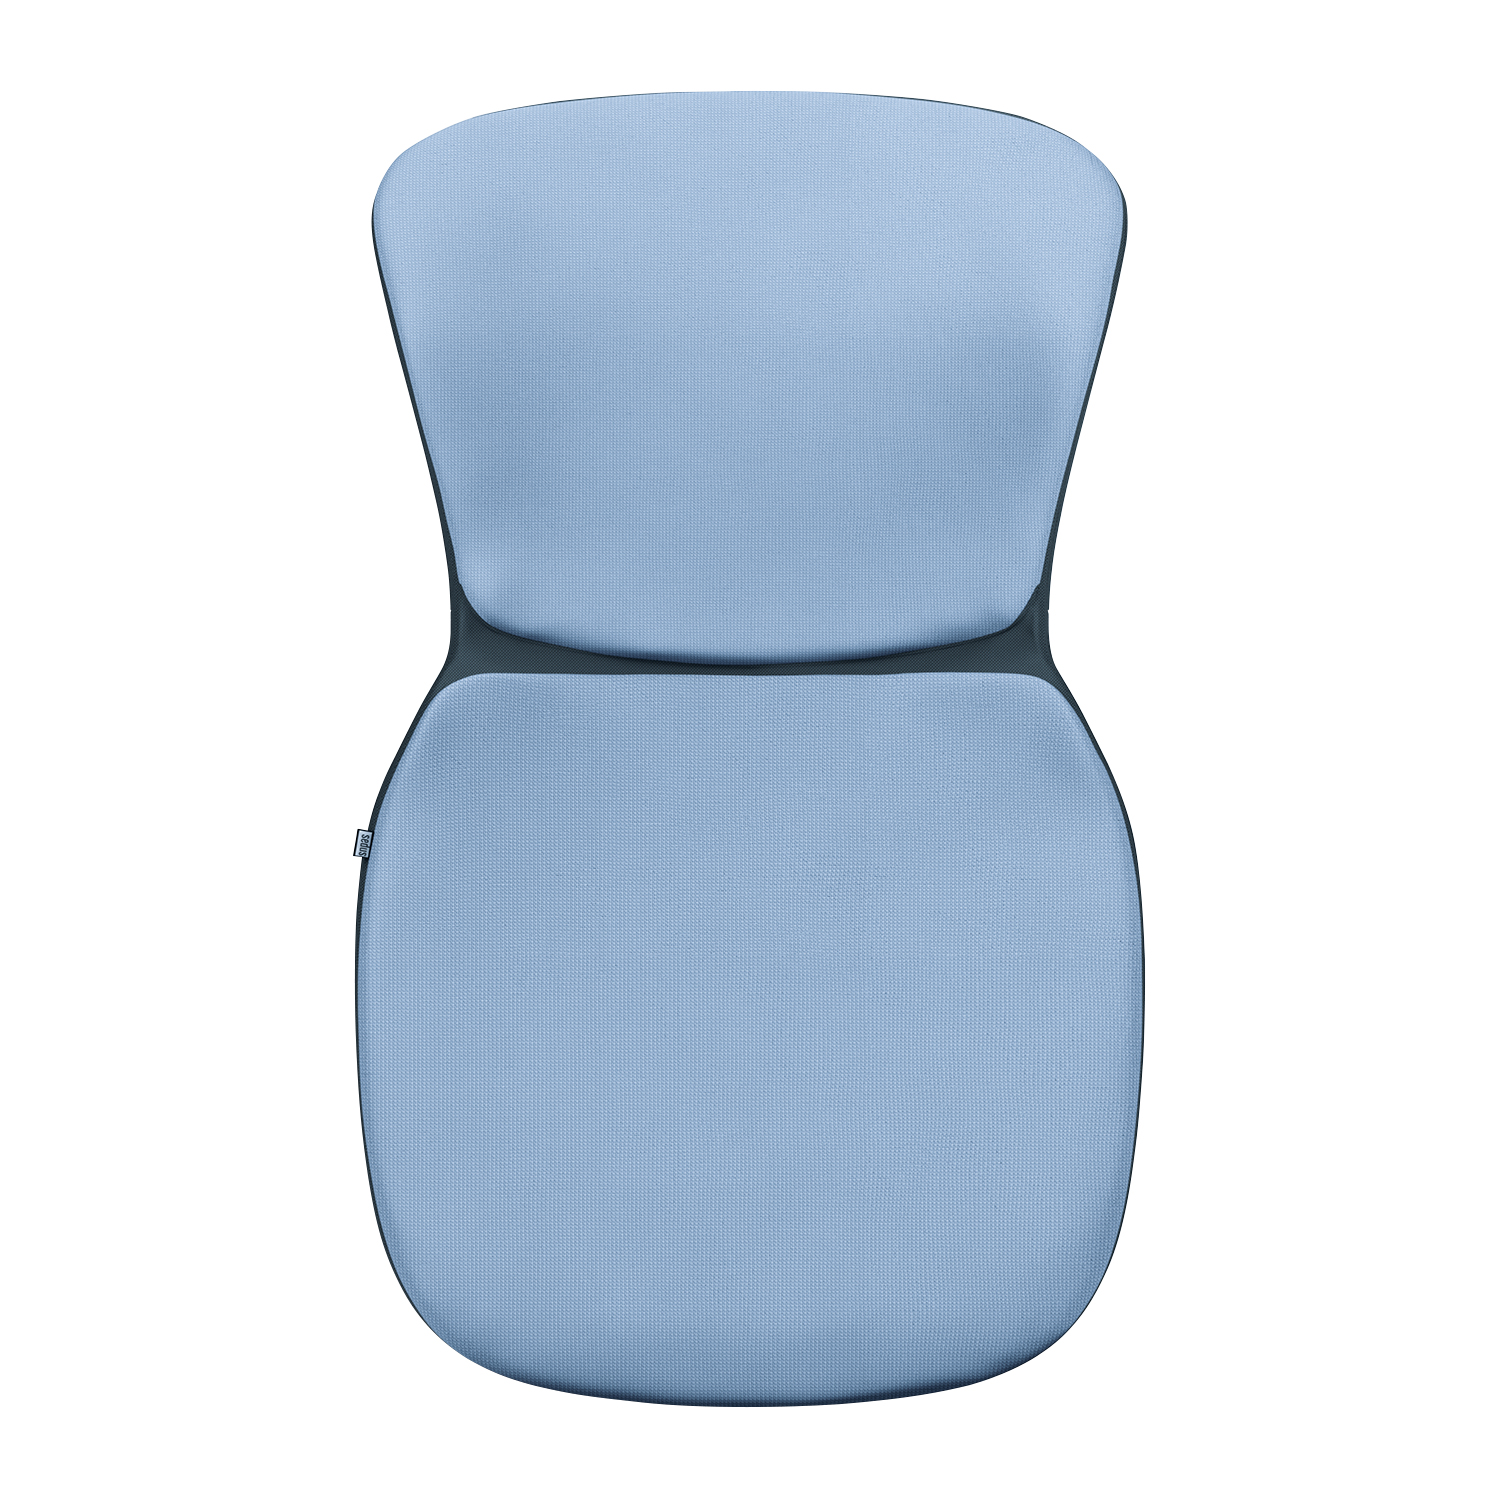 se:spot stool Wechselpolster Fame grey blue light (F66130)